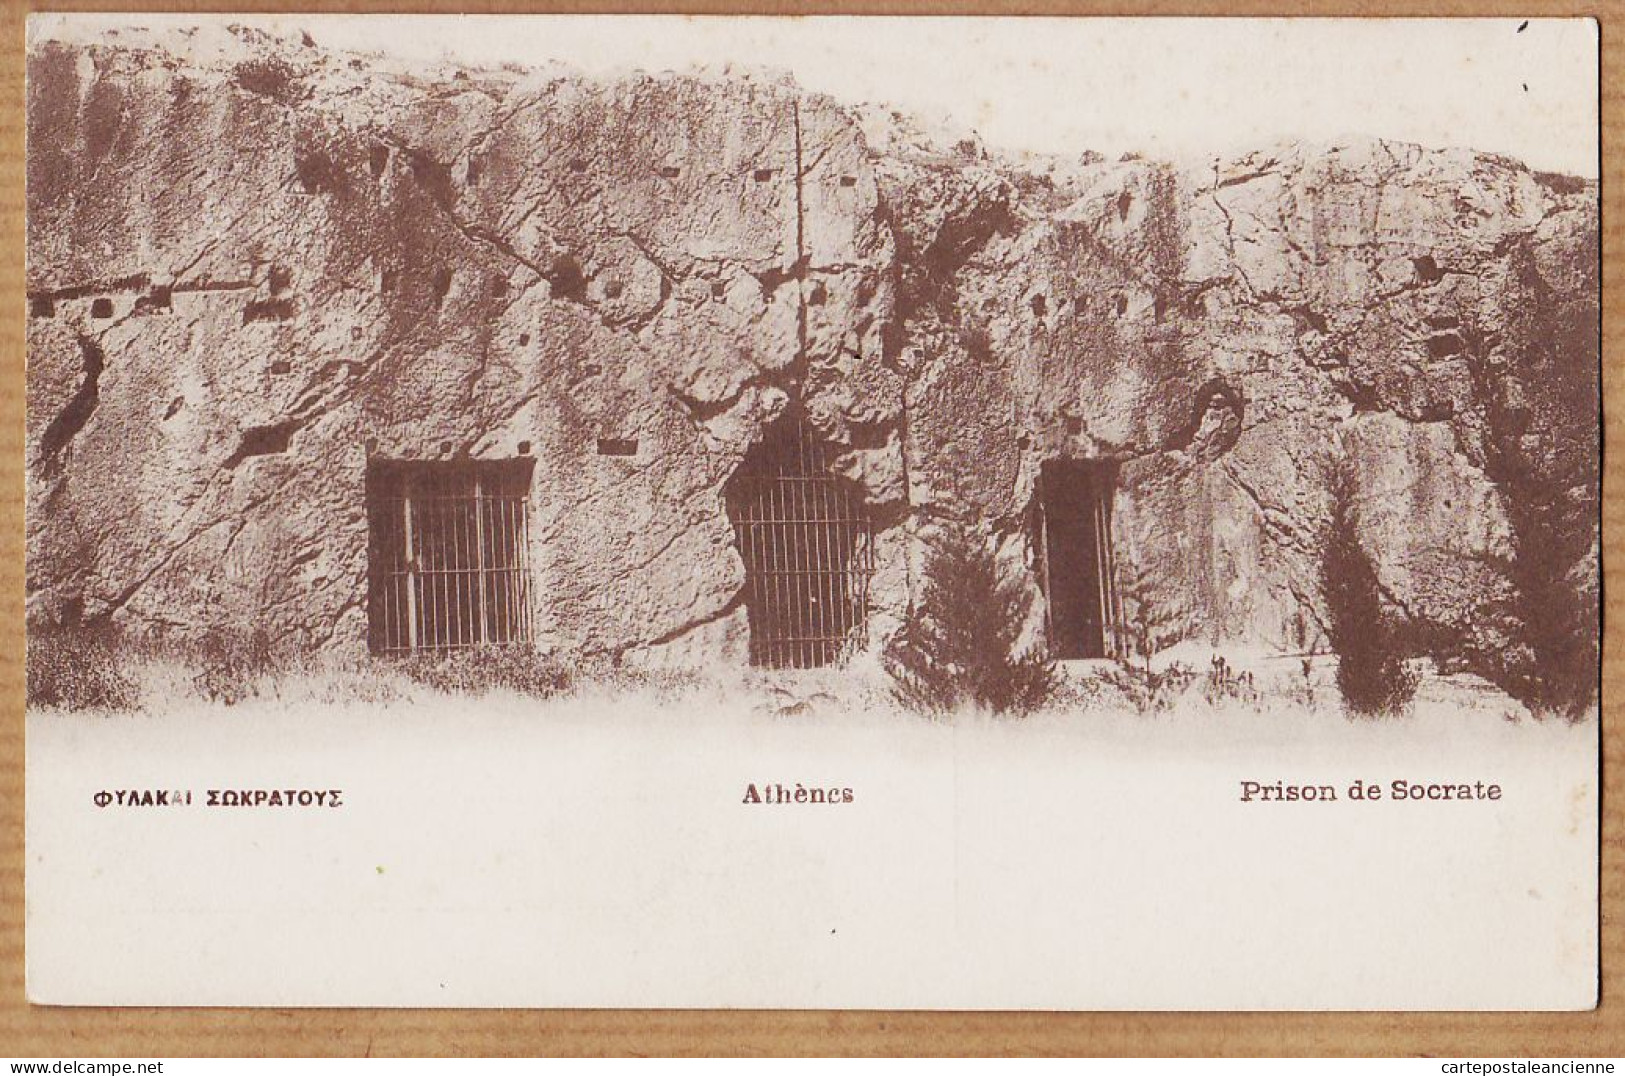 06421 / ATHENES Prison De SOCRATE 1910s Edition Grecque PALLIS COTZIAS 104 - Greece